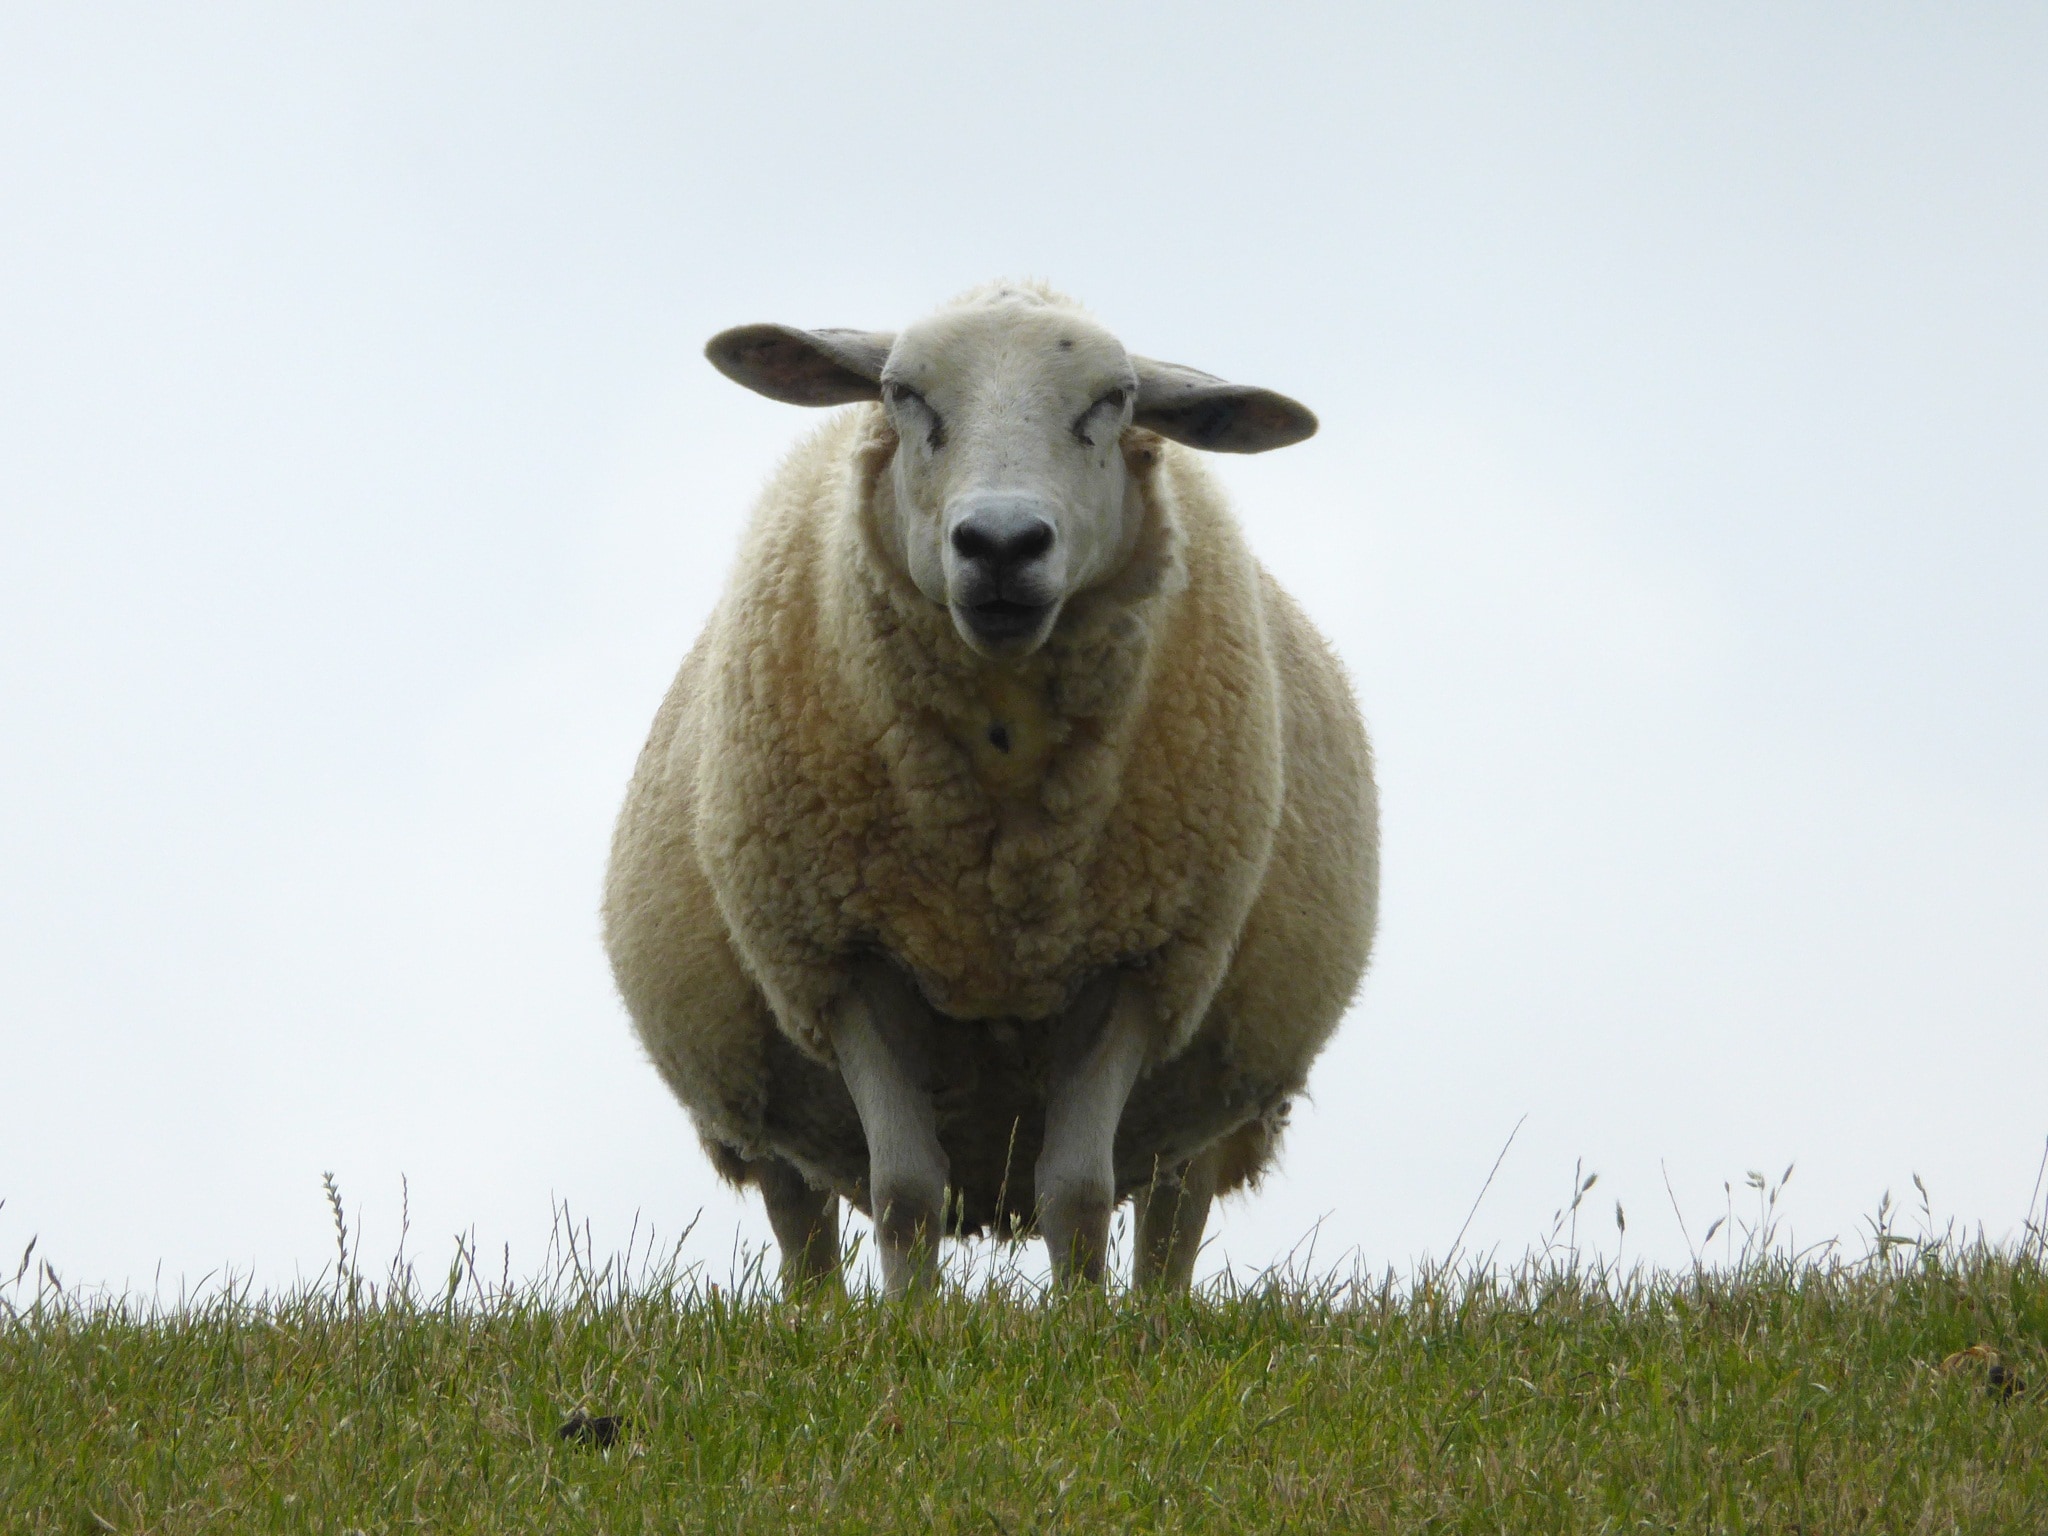 sheep standing on grass field